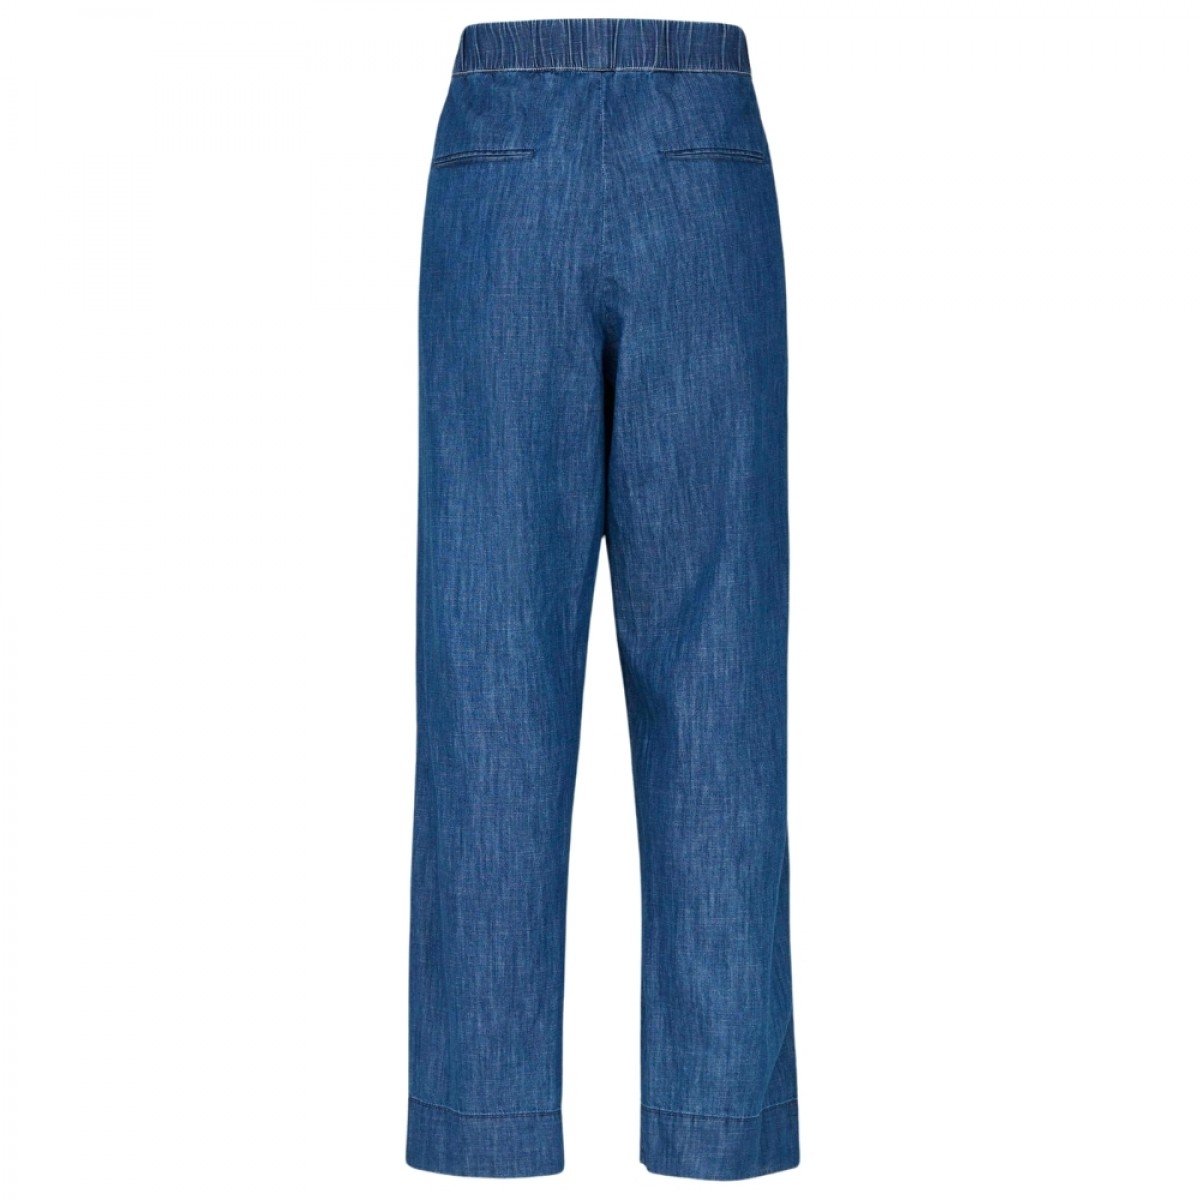 miles pant denim - blue jeans - bagfra 